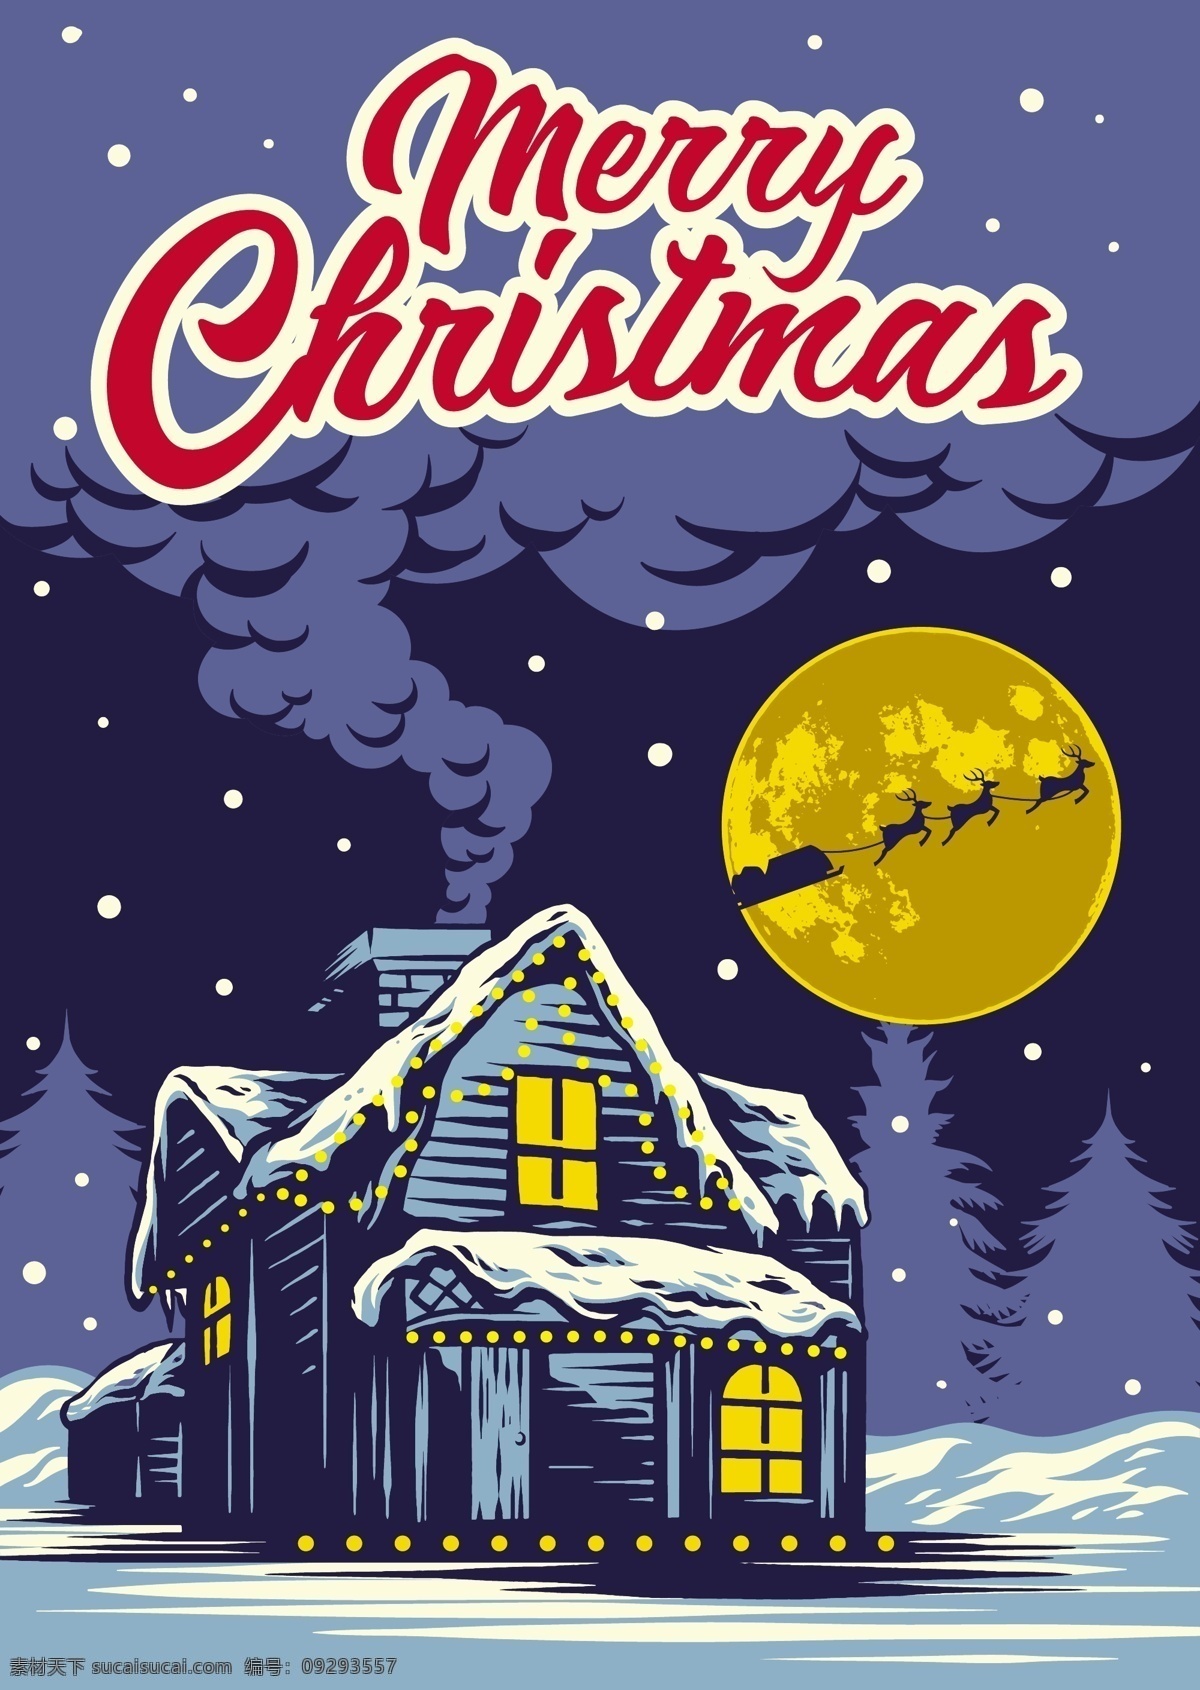 圣诞 夜 矢量 房子 圣诞礼物 圣诞夜 矢量素材下载 星星 雪 雪景 驯鹿